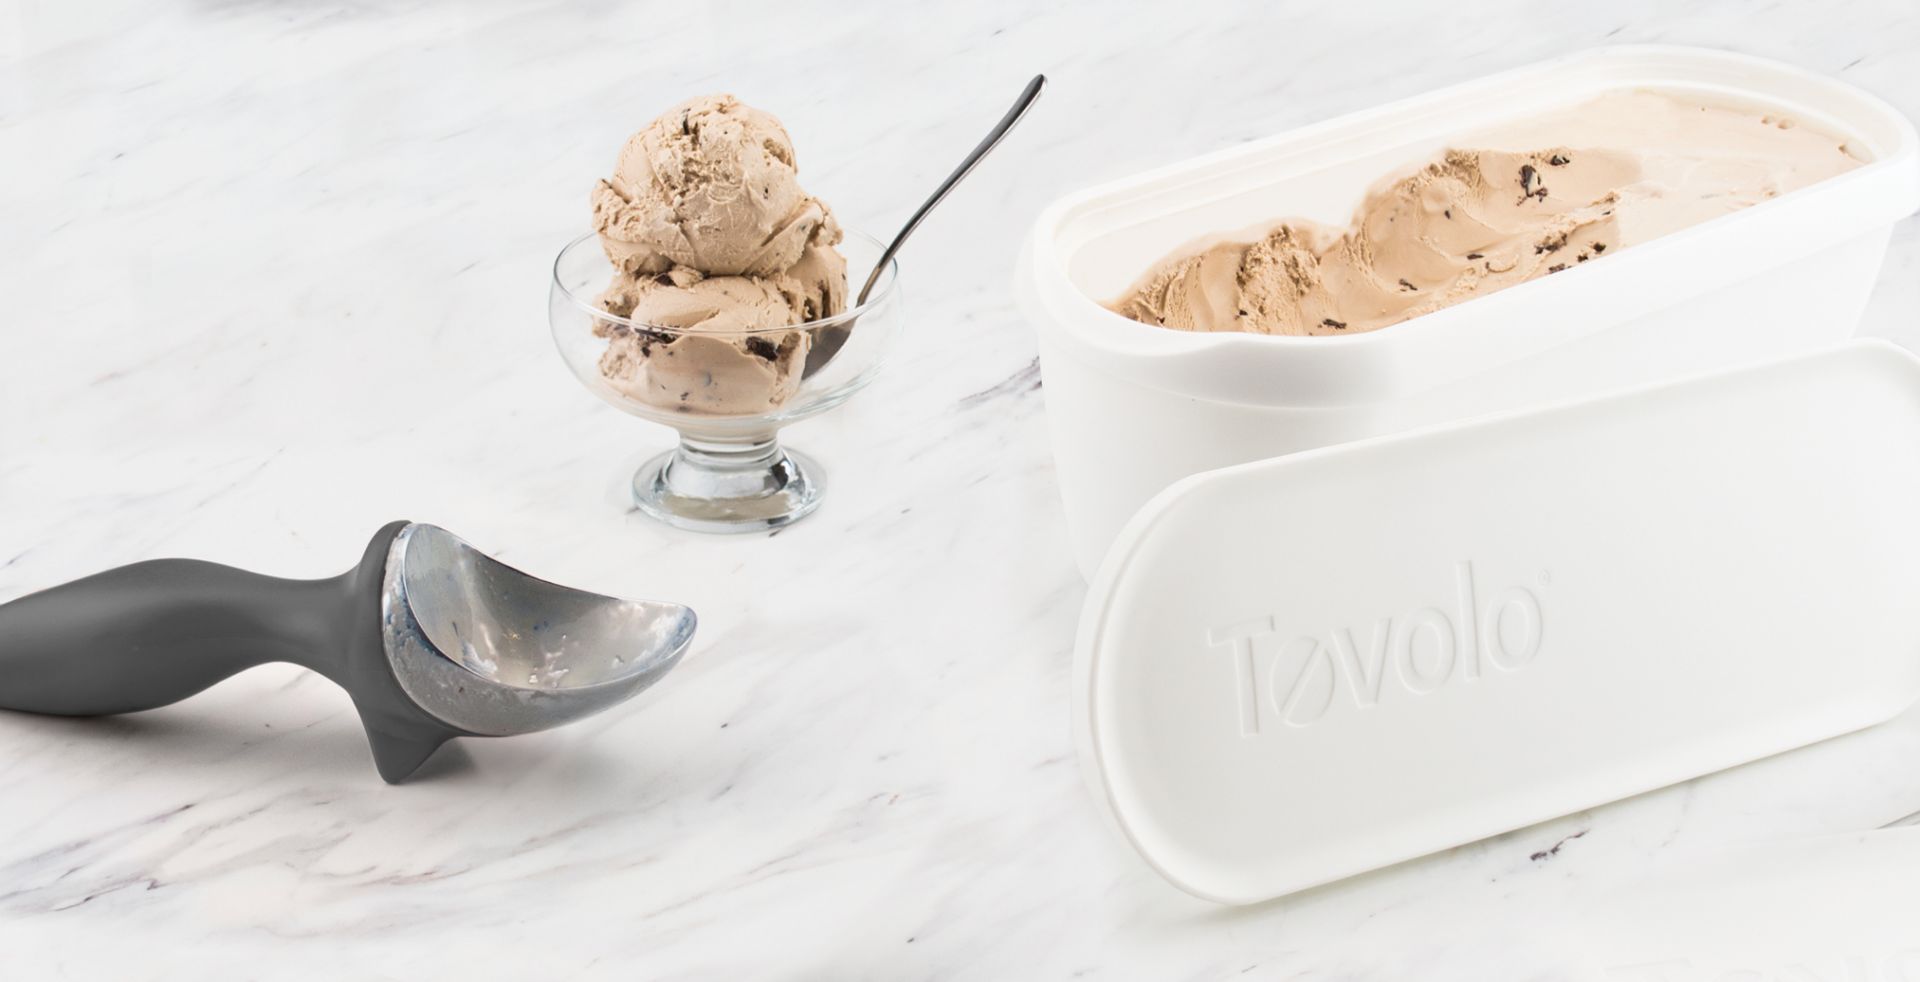 Tovolo Mini Sweet Treat 6-oz. Ice Cream Tubs, Set of 3 - Assorted